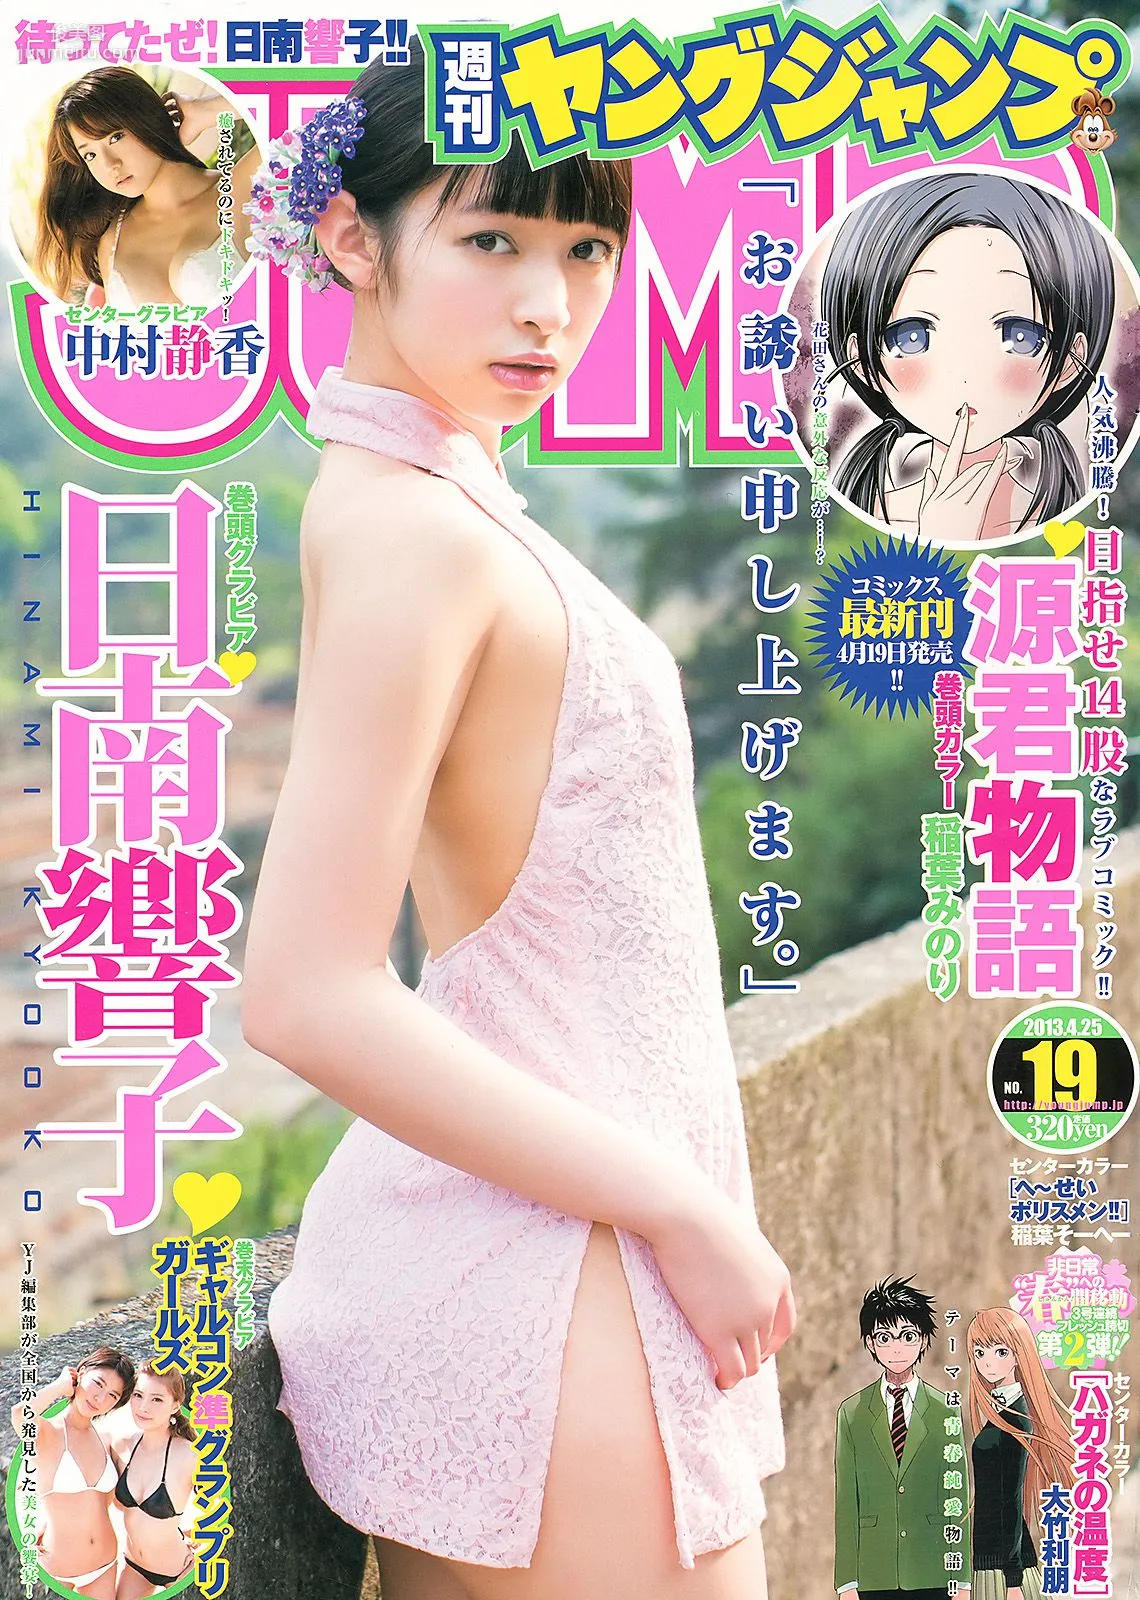 日南響子 中村静香 ギャルコン準グランプリガールズ [Weekly Young Jump] 2013年No.19 写真杂志1